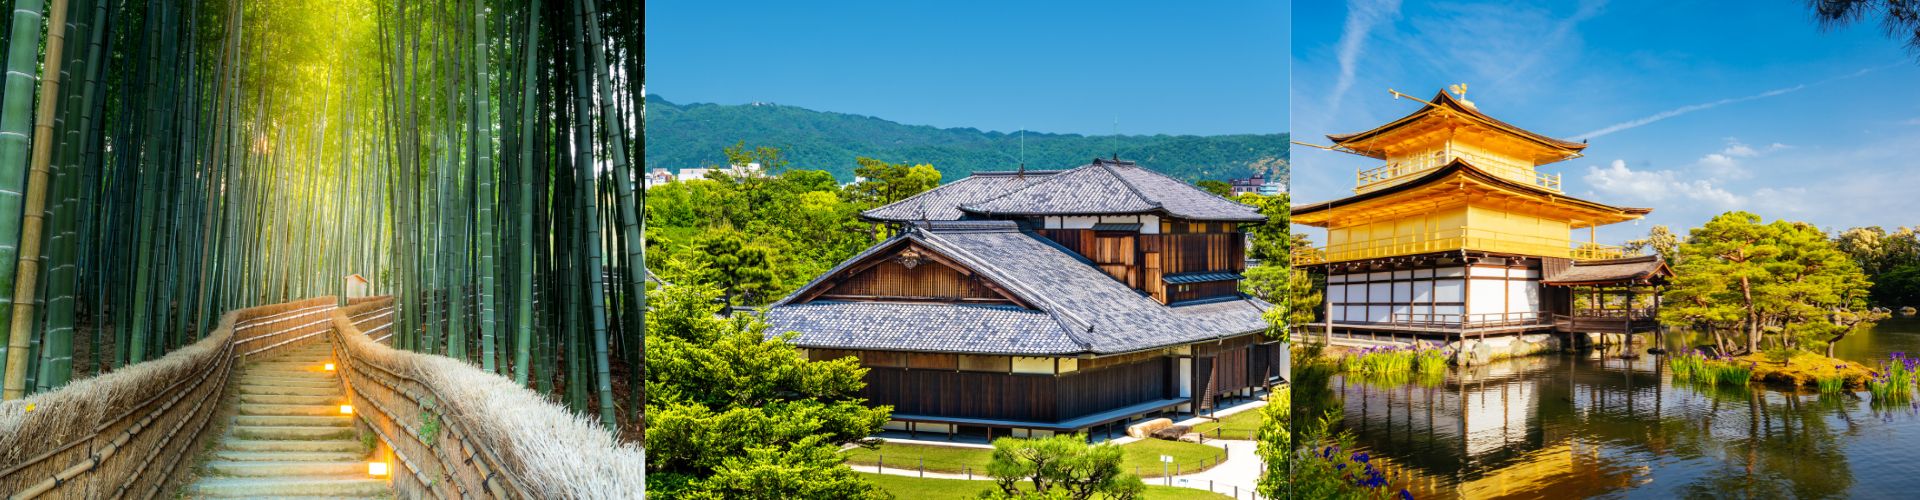 KJOTO –fakultativnI izlet obilazak Kjota i Arašijama (šuma bambusa)